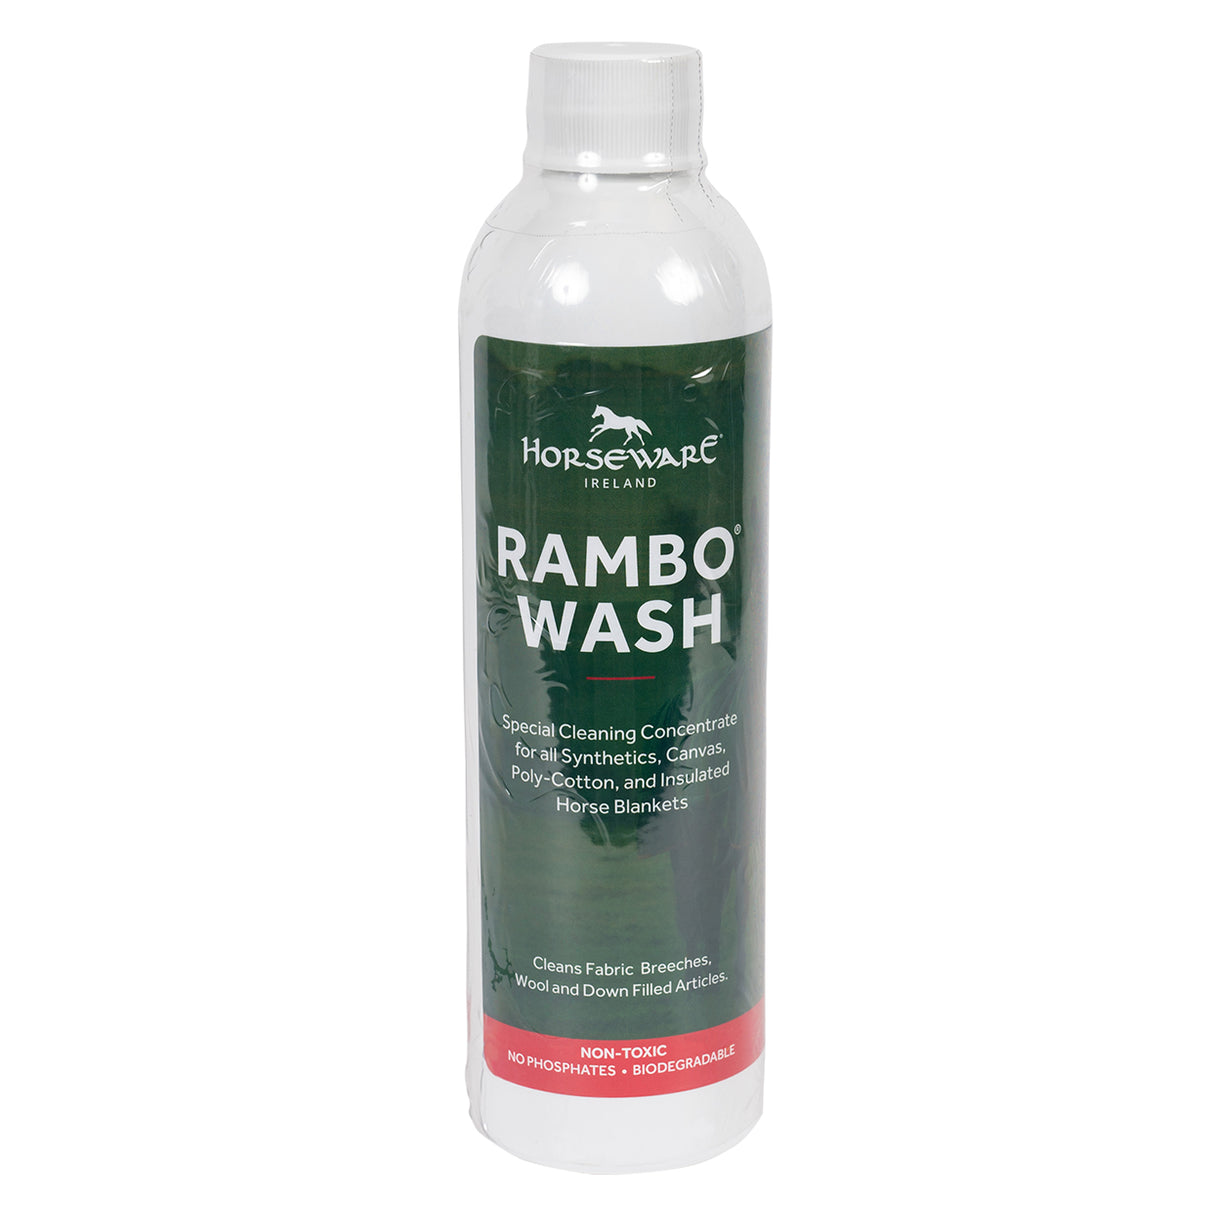 Rambo Wash